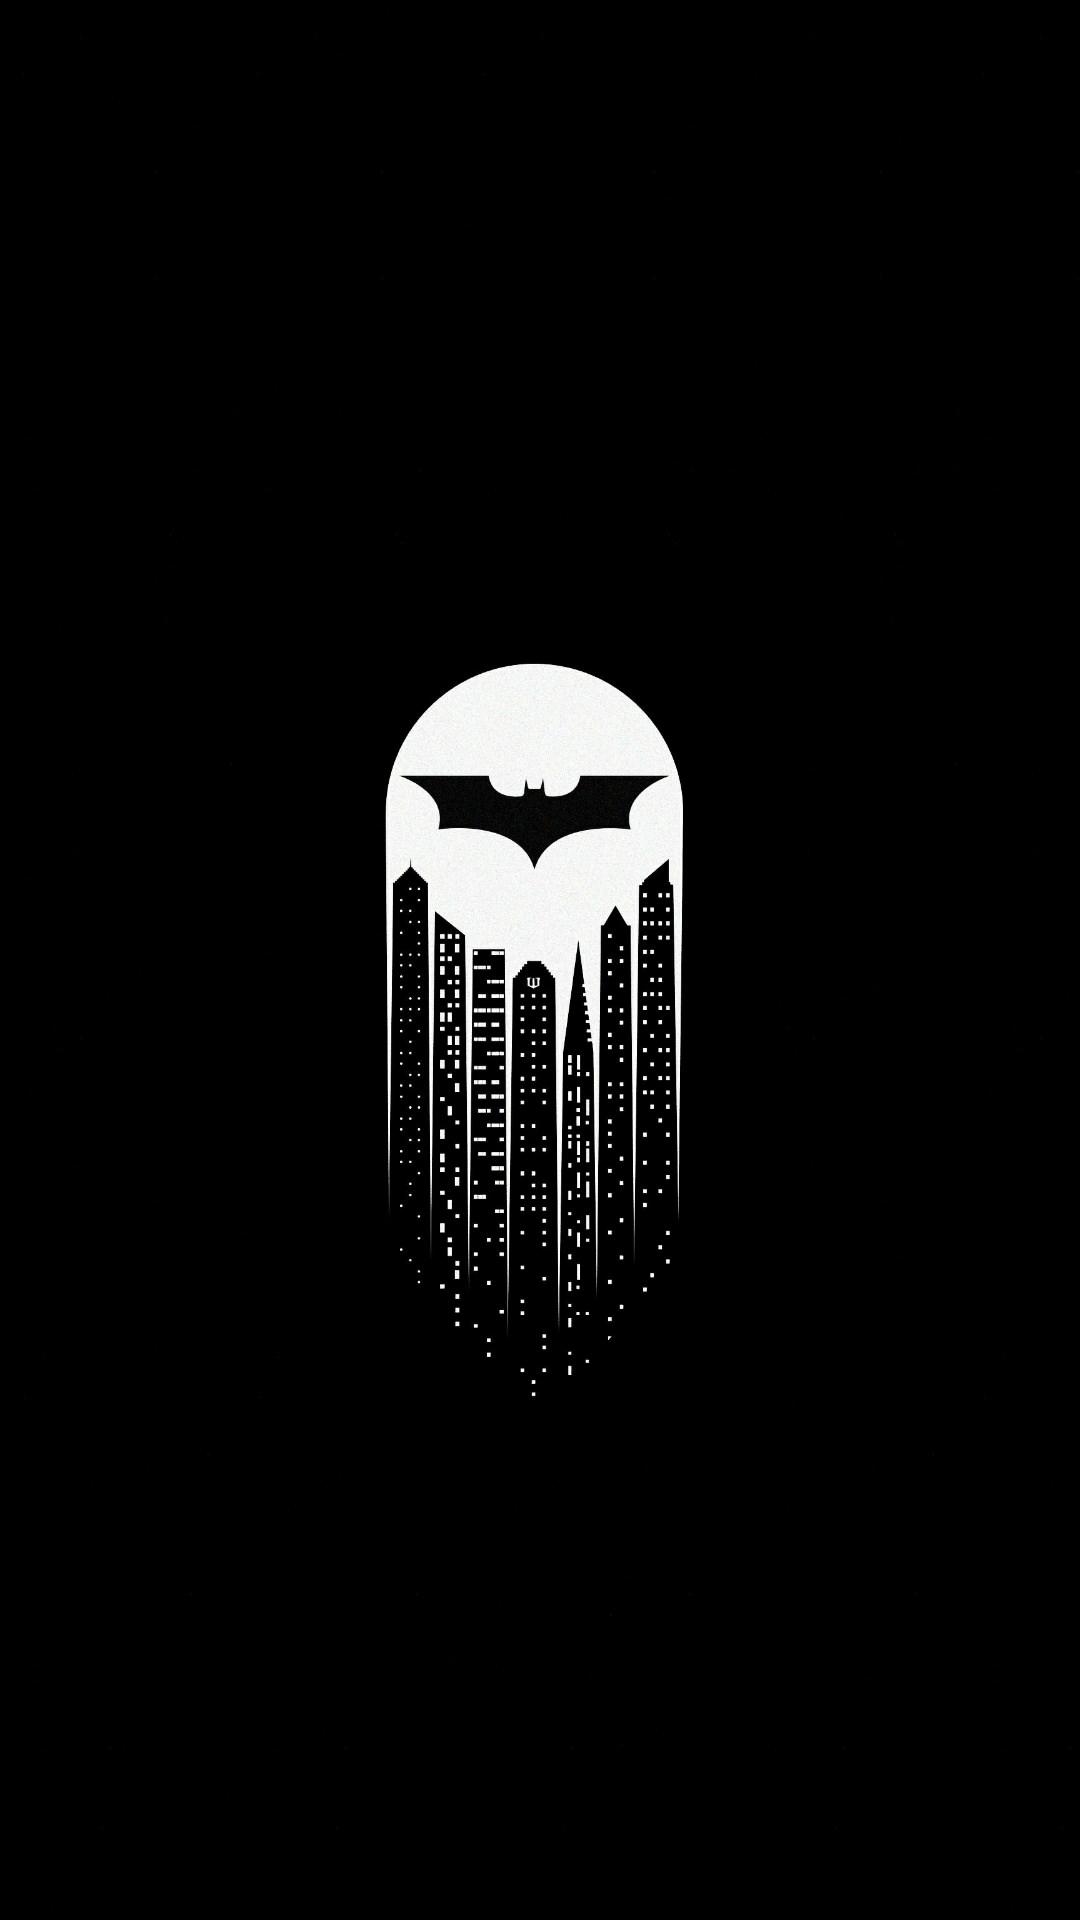 BATMAN AMOLED WALLPAPER | Wallpaper, Cool wallpaper, Batman